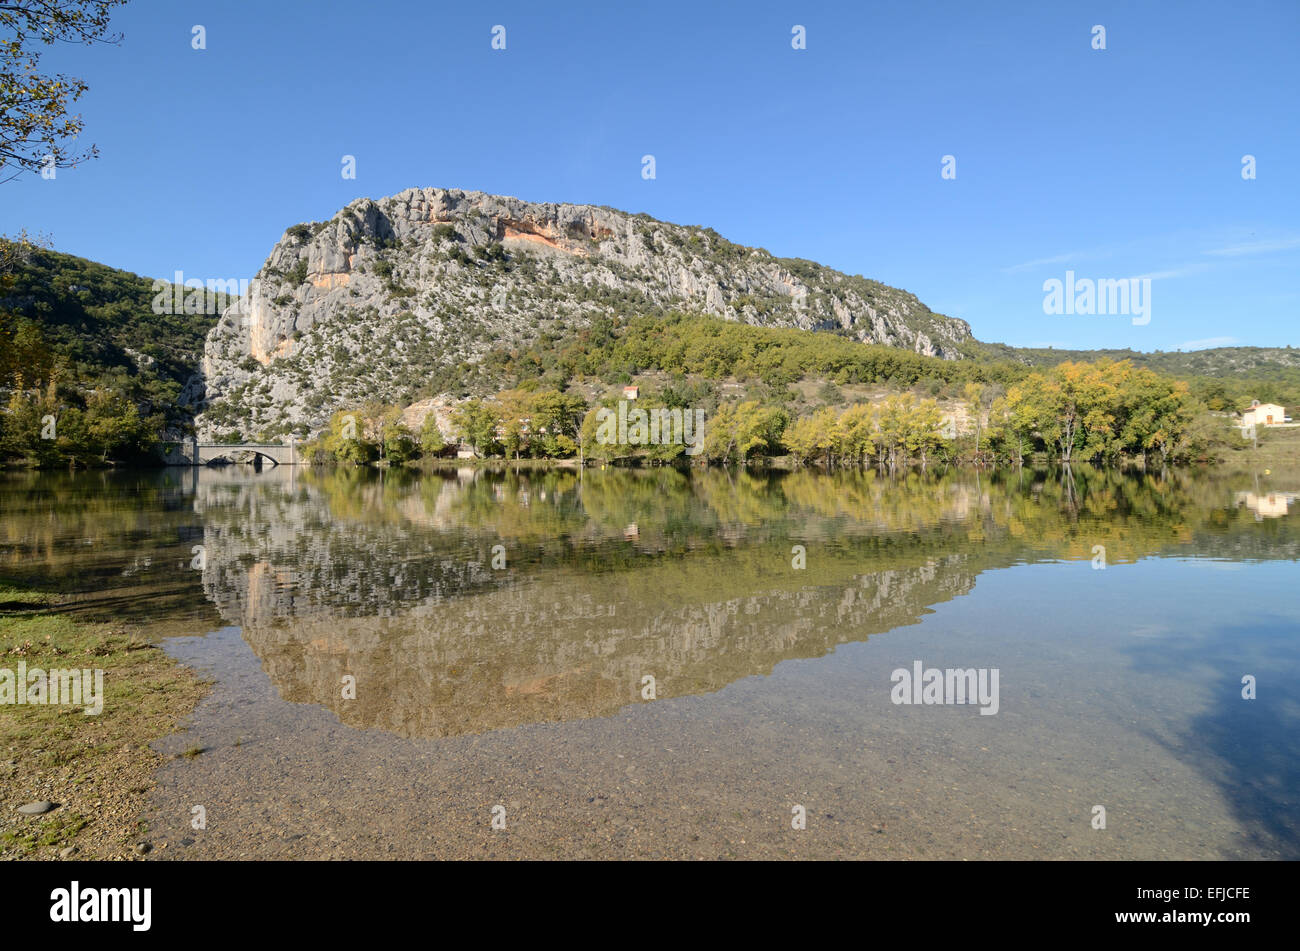 Quinson und Felsvorsprung oder Hügel bekannt als Baume & Fluss Verdon in den Regionalparks Verdon Alpes-de-Haute-Provence Provence Frankreich Stockfoto